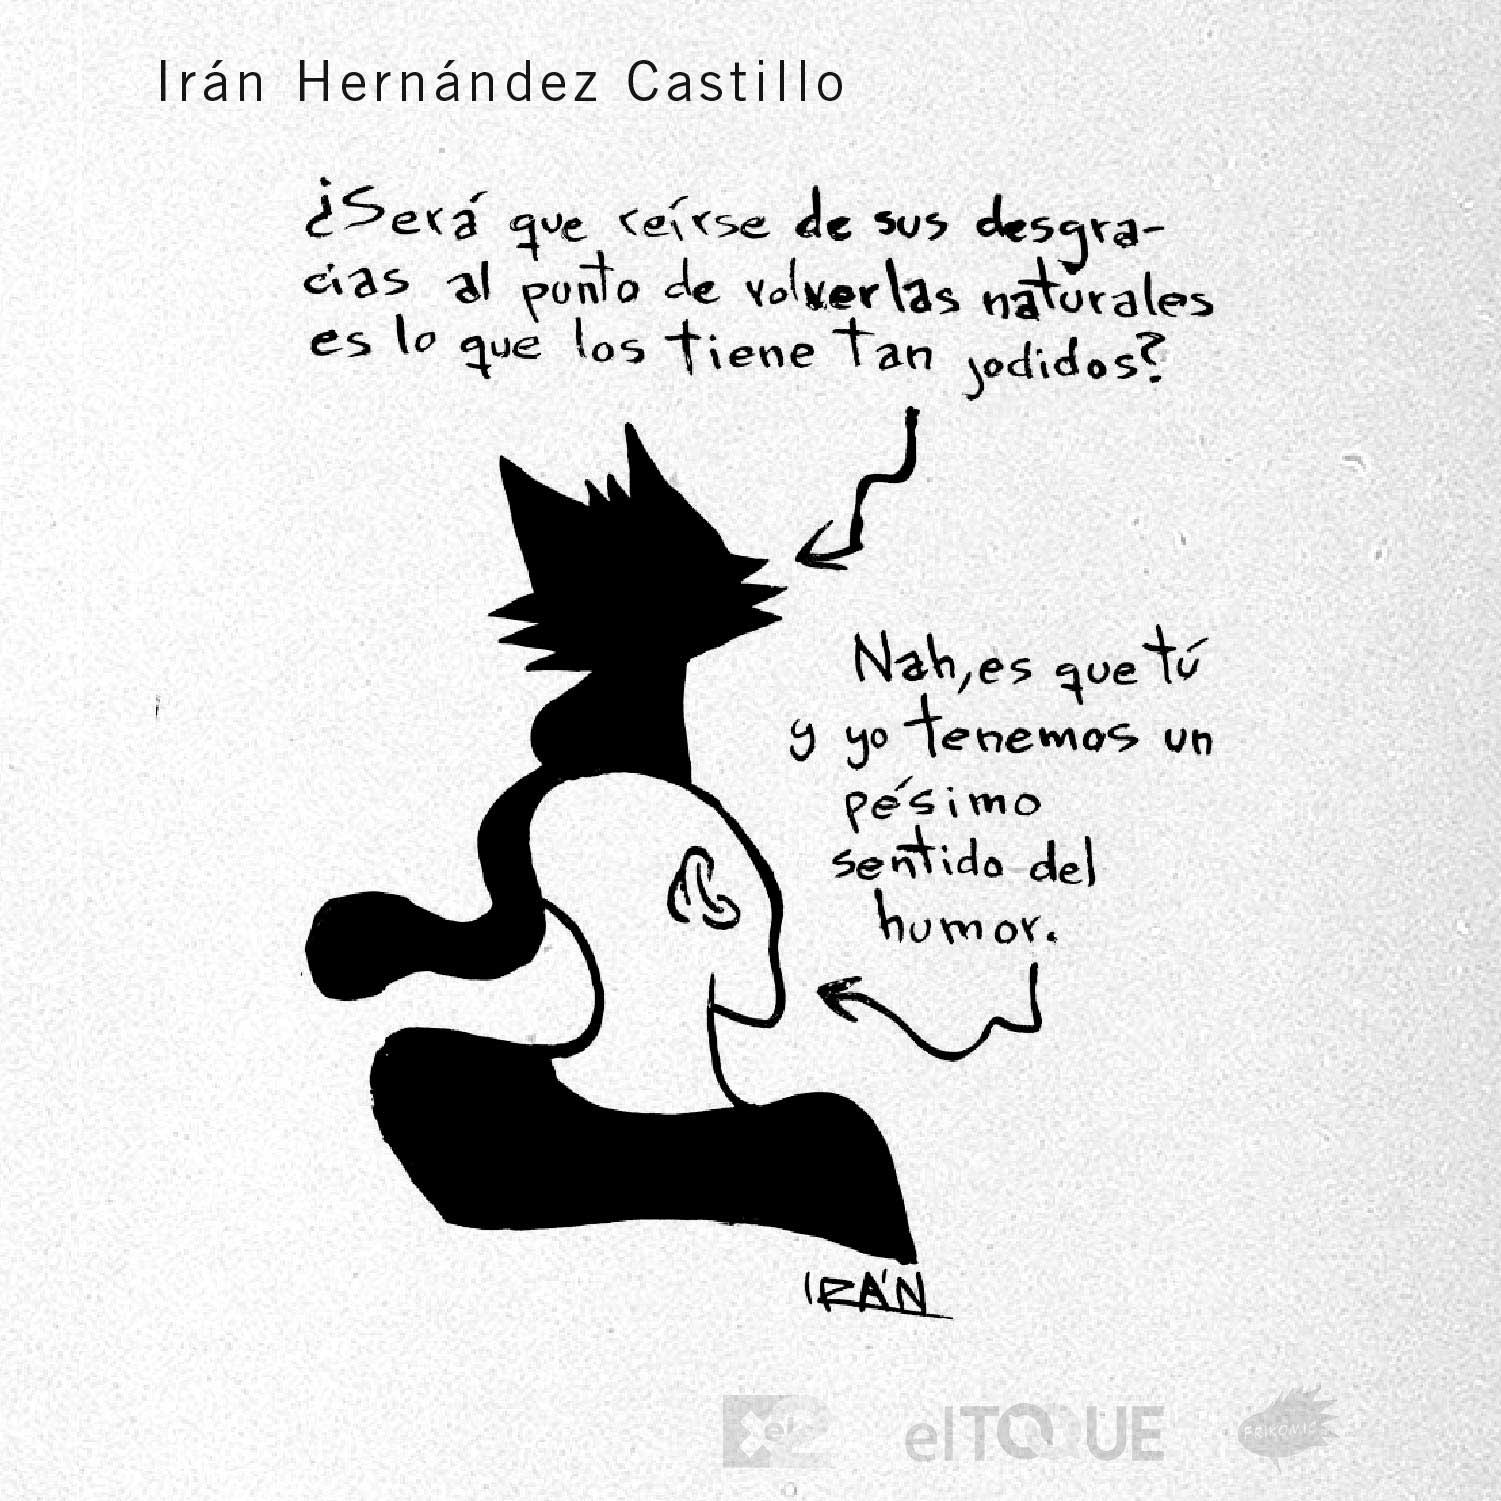 21-03-Hernandez-Iran-POSTALES-NUEVA-NORMALIDAD-CUBA-ECONOMIA-ESCASEZ.jpg